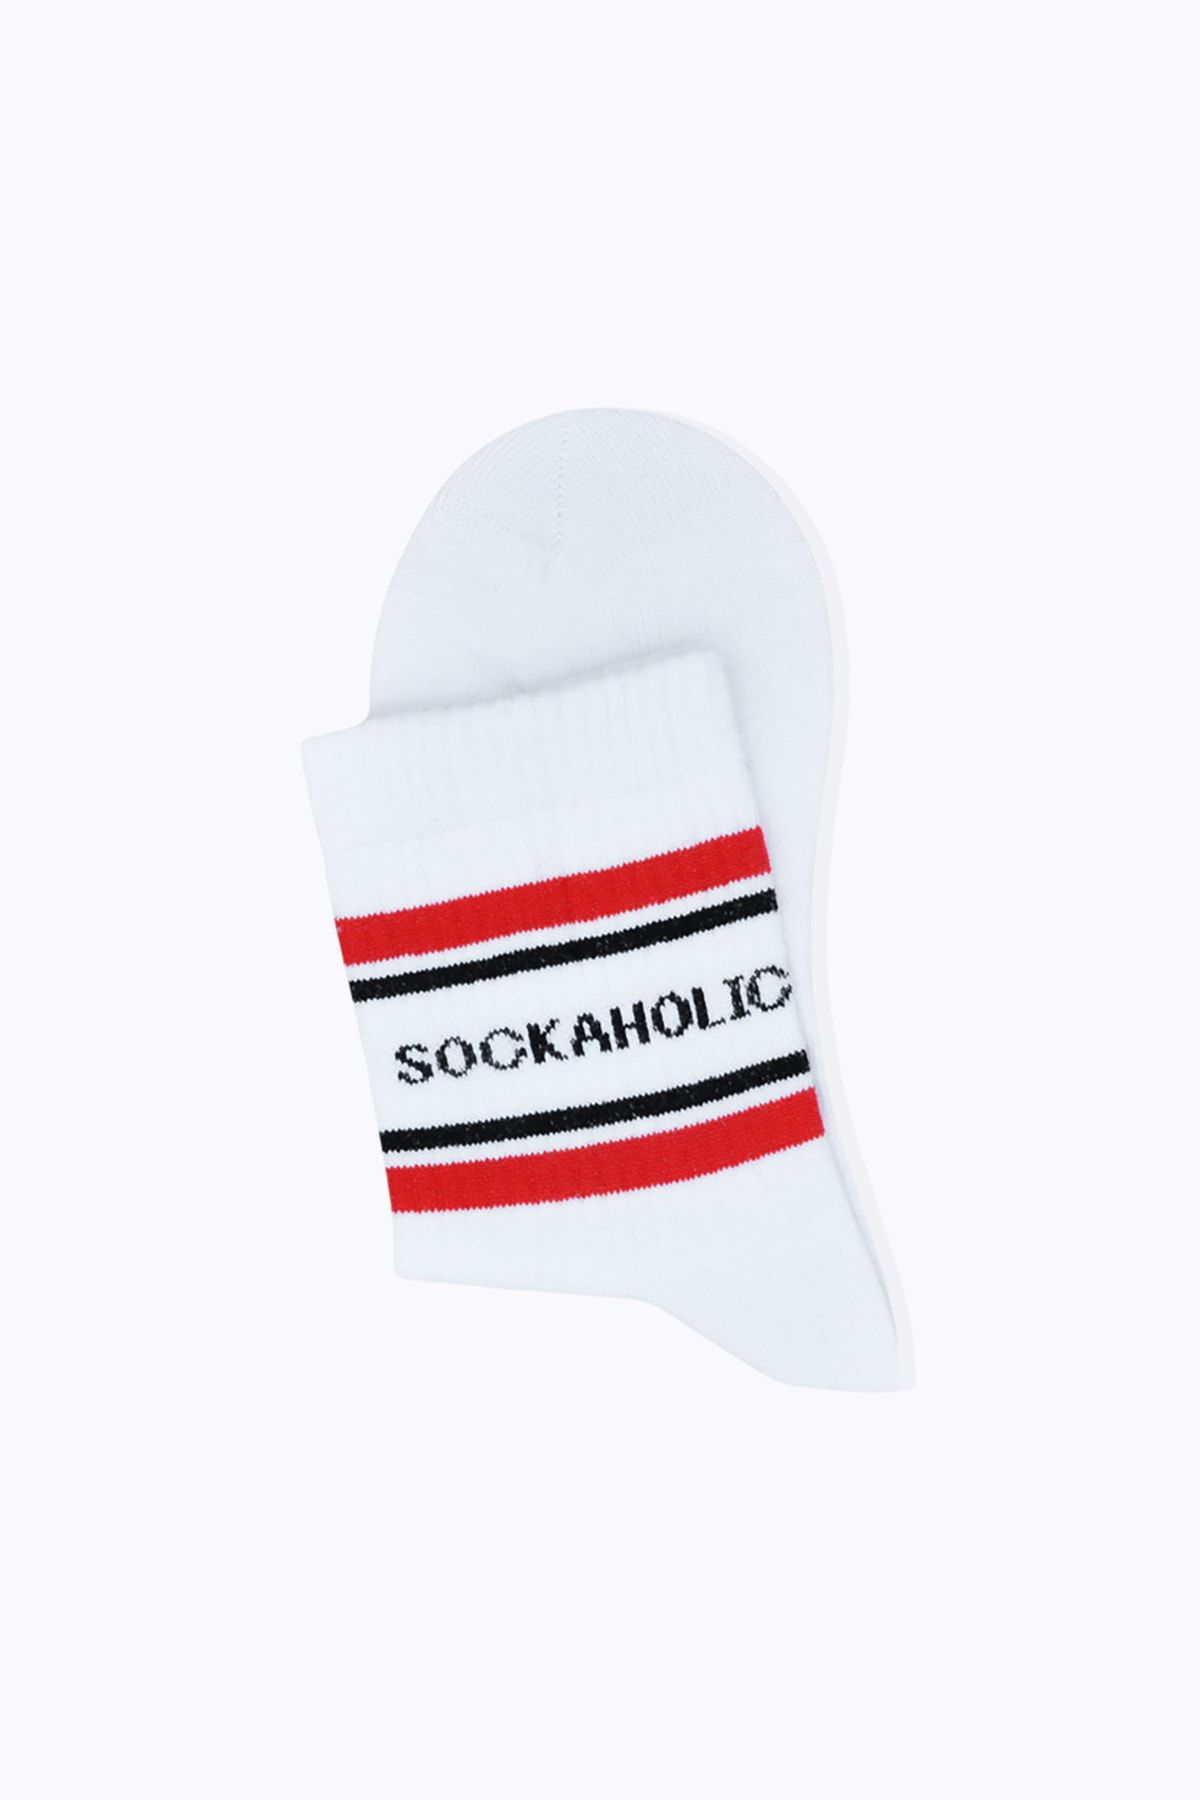 Socks Academy Sockaholic Mottolu Kırmızı Çizgili Beyaz Çorap